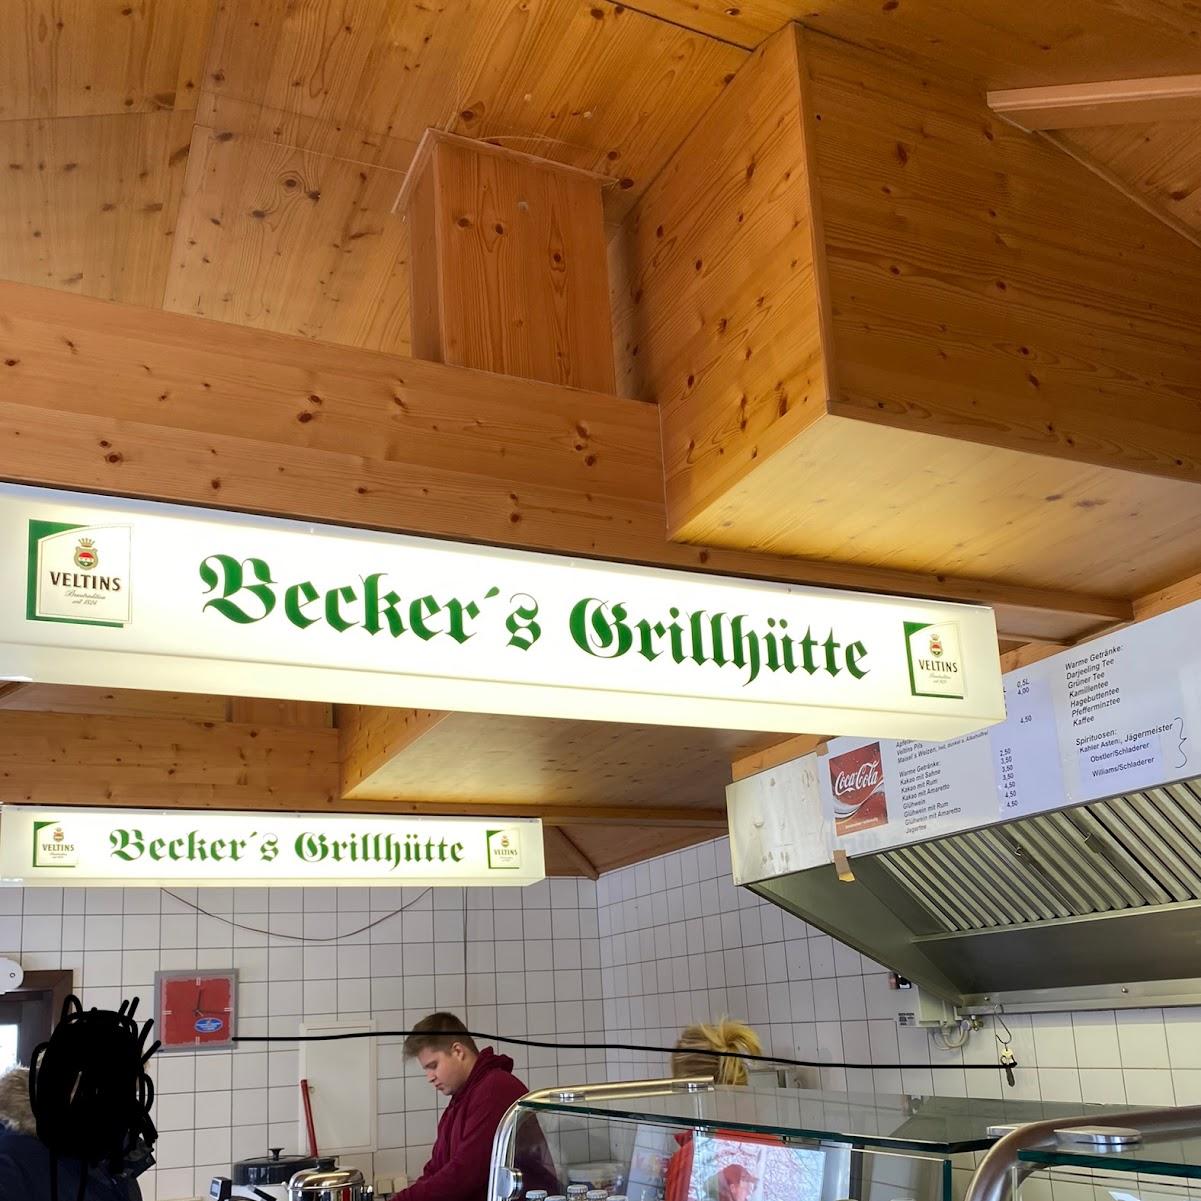 Restaurant "Becker